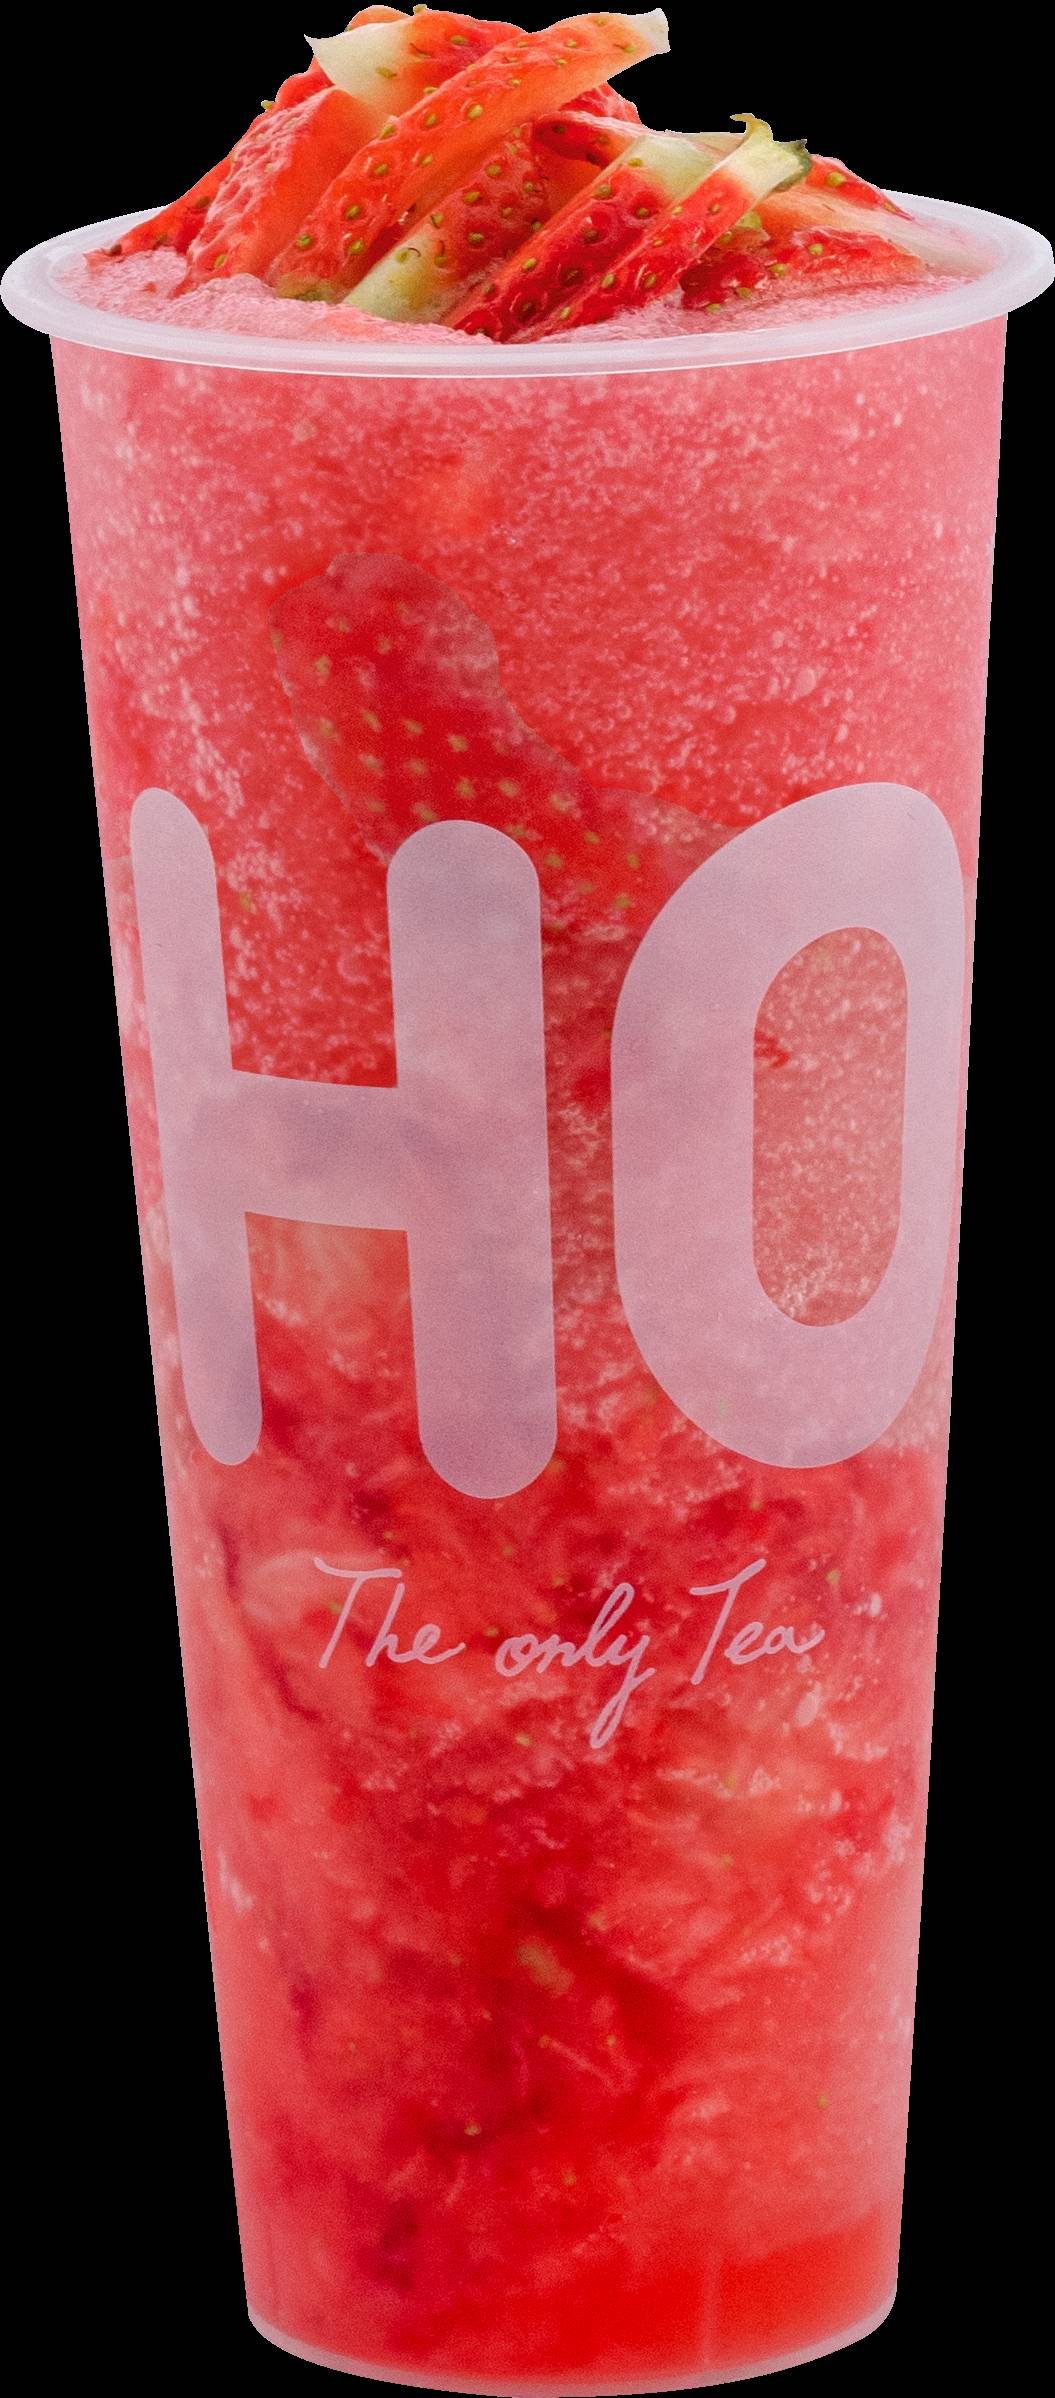 LiHO TEA推出草莓飲品，只供應到3月，錯過等一年